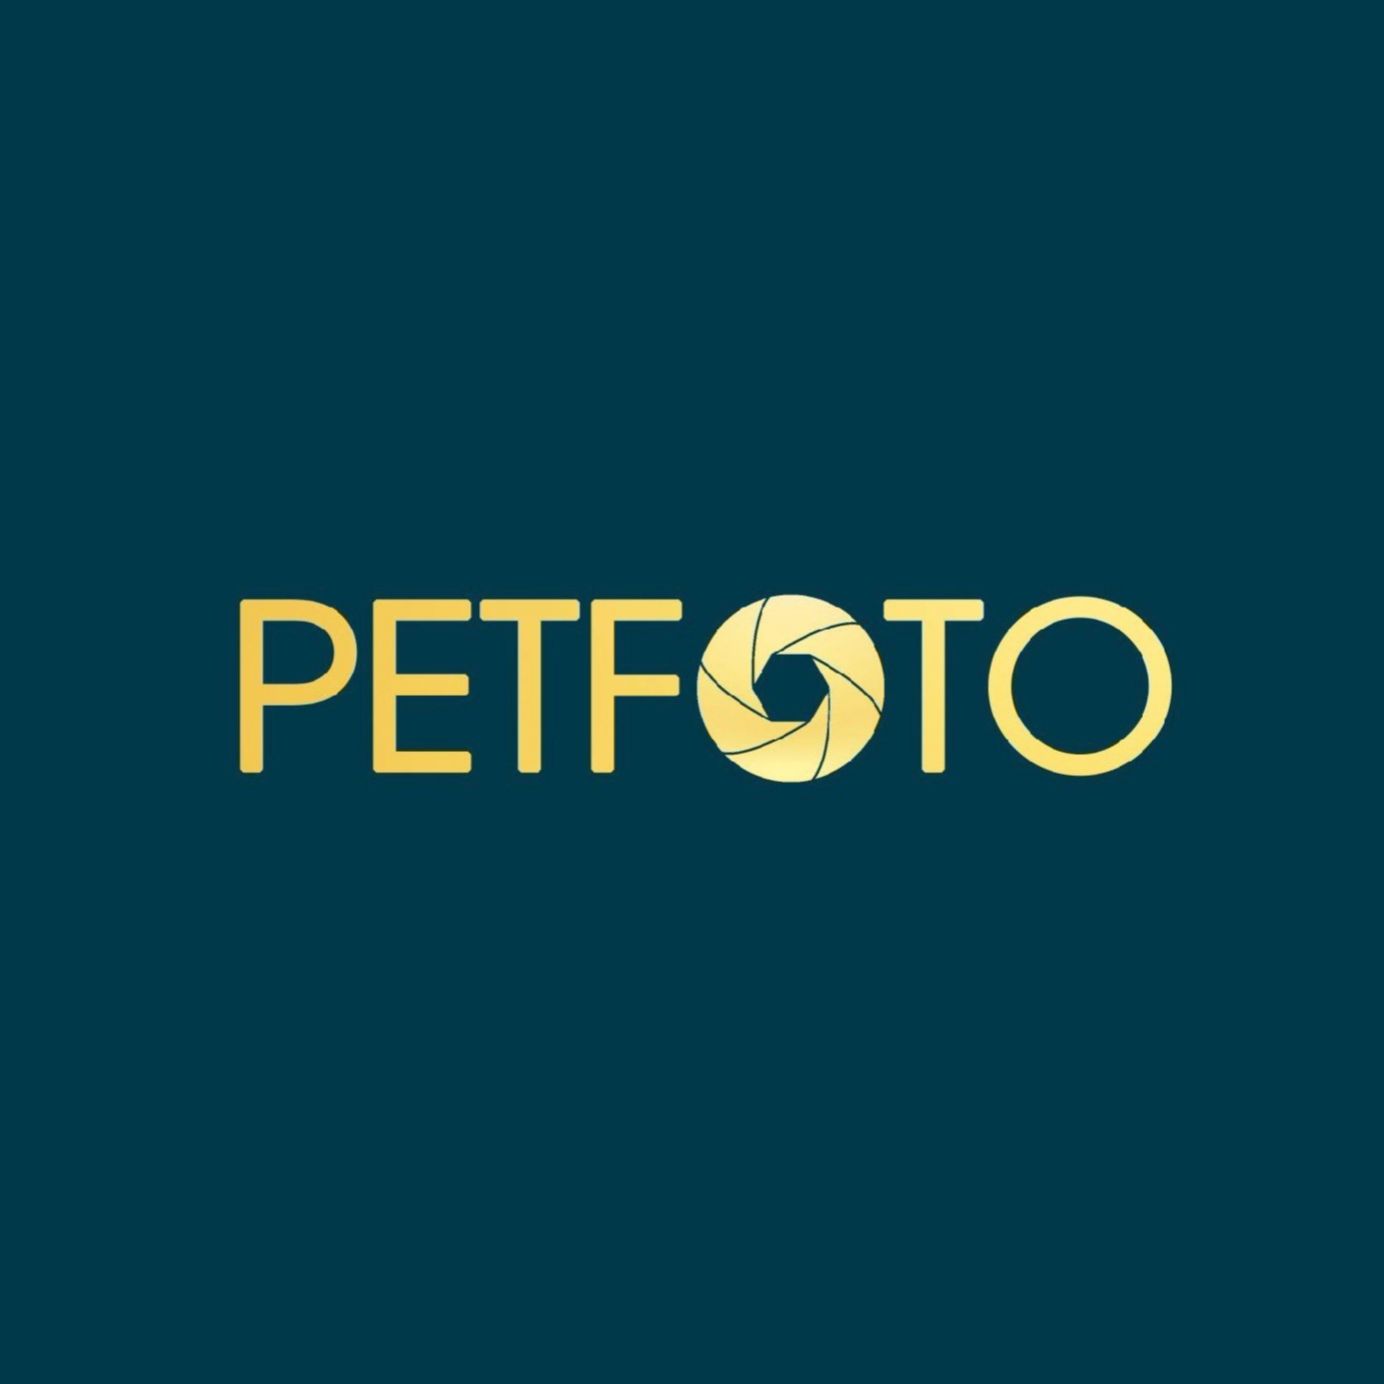 Hình ảnh của petfoto.vn